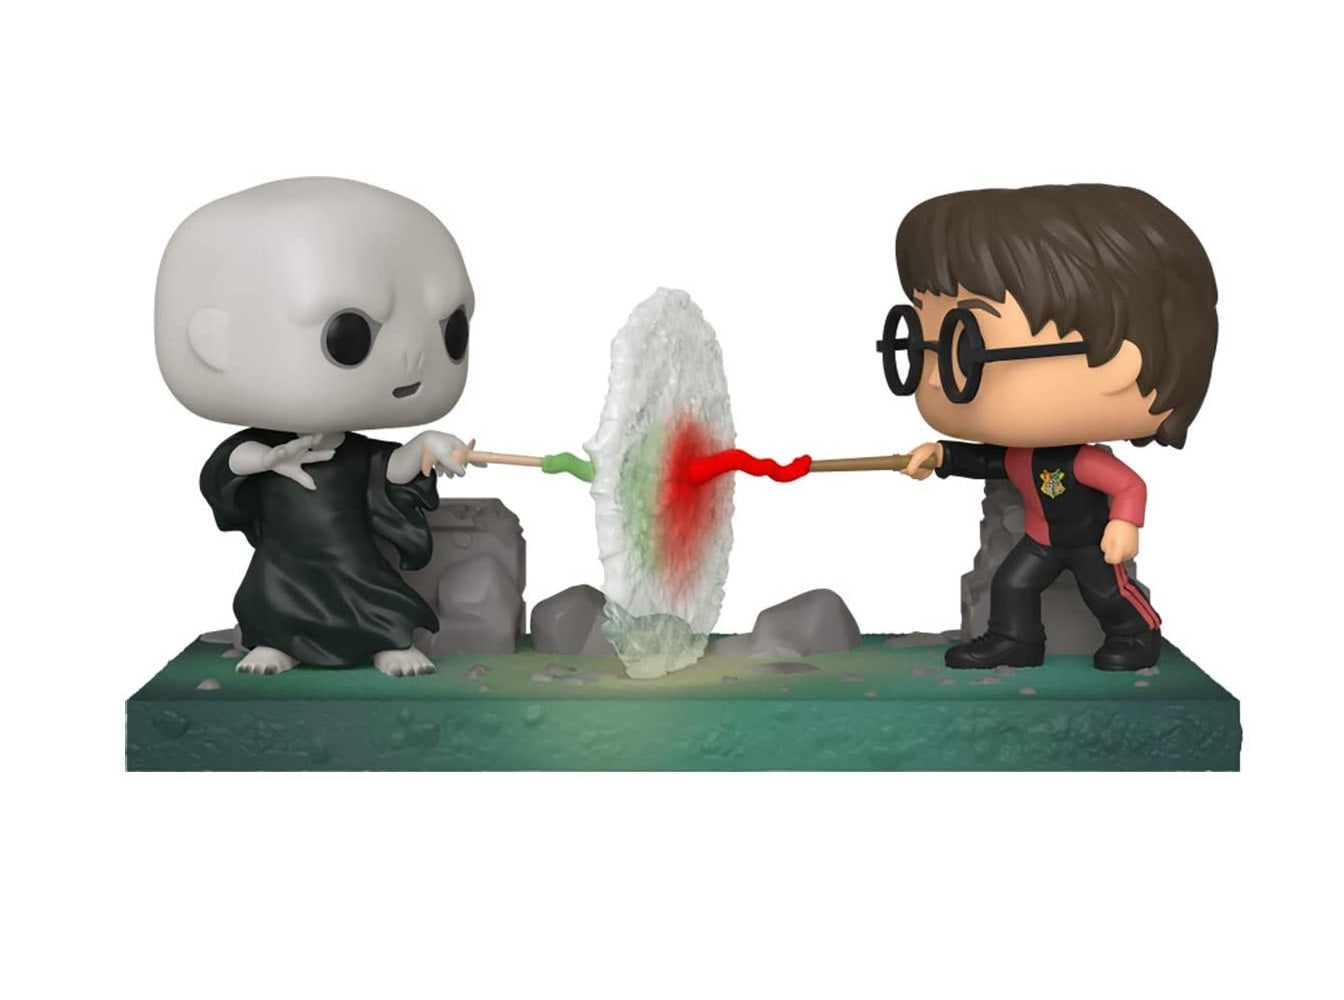 Figurine POP Harry Potter Harry VS Voldemort 119